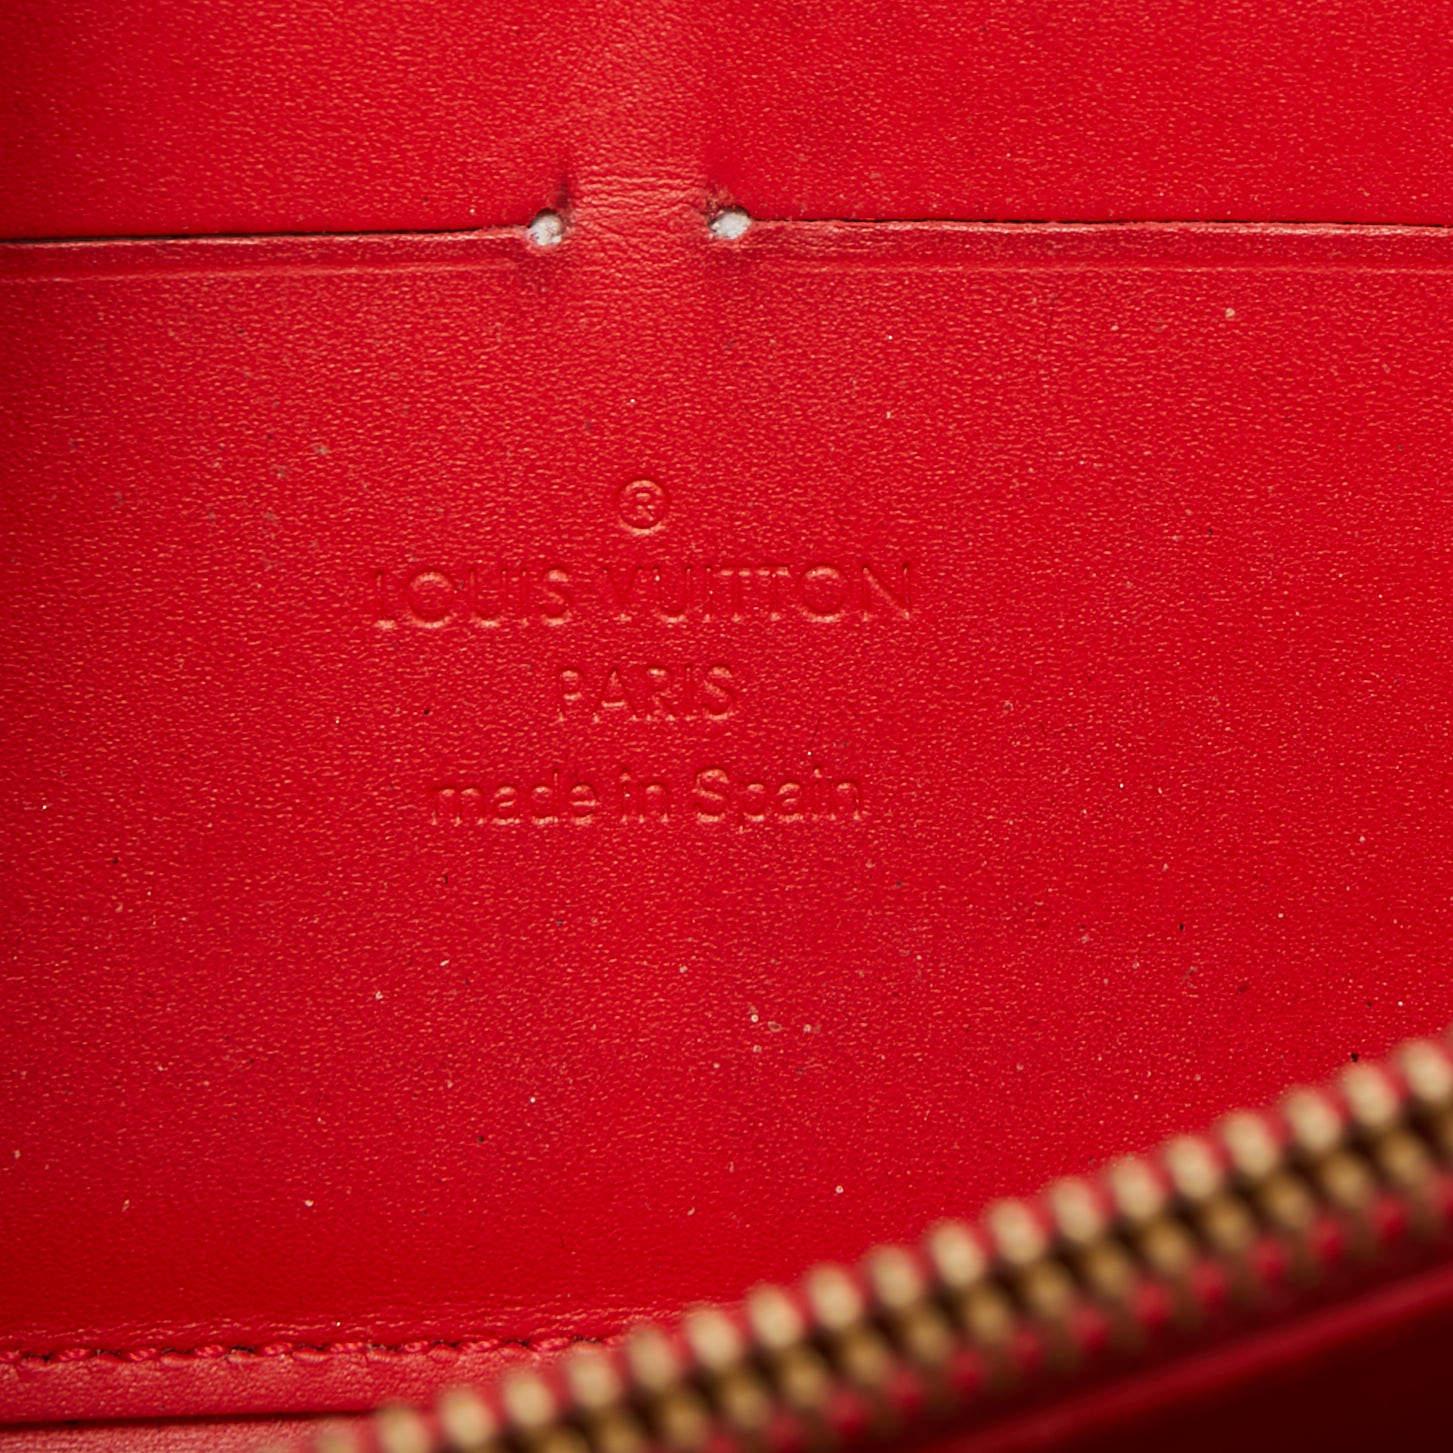 Louis Vuitton Pomme D’amour Monogram Vernis Zippy Wallet For Sale 1